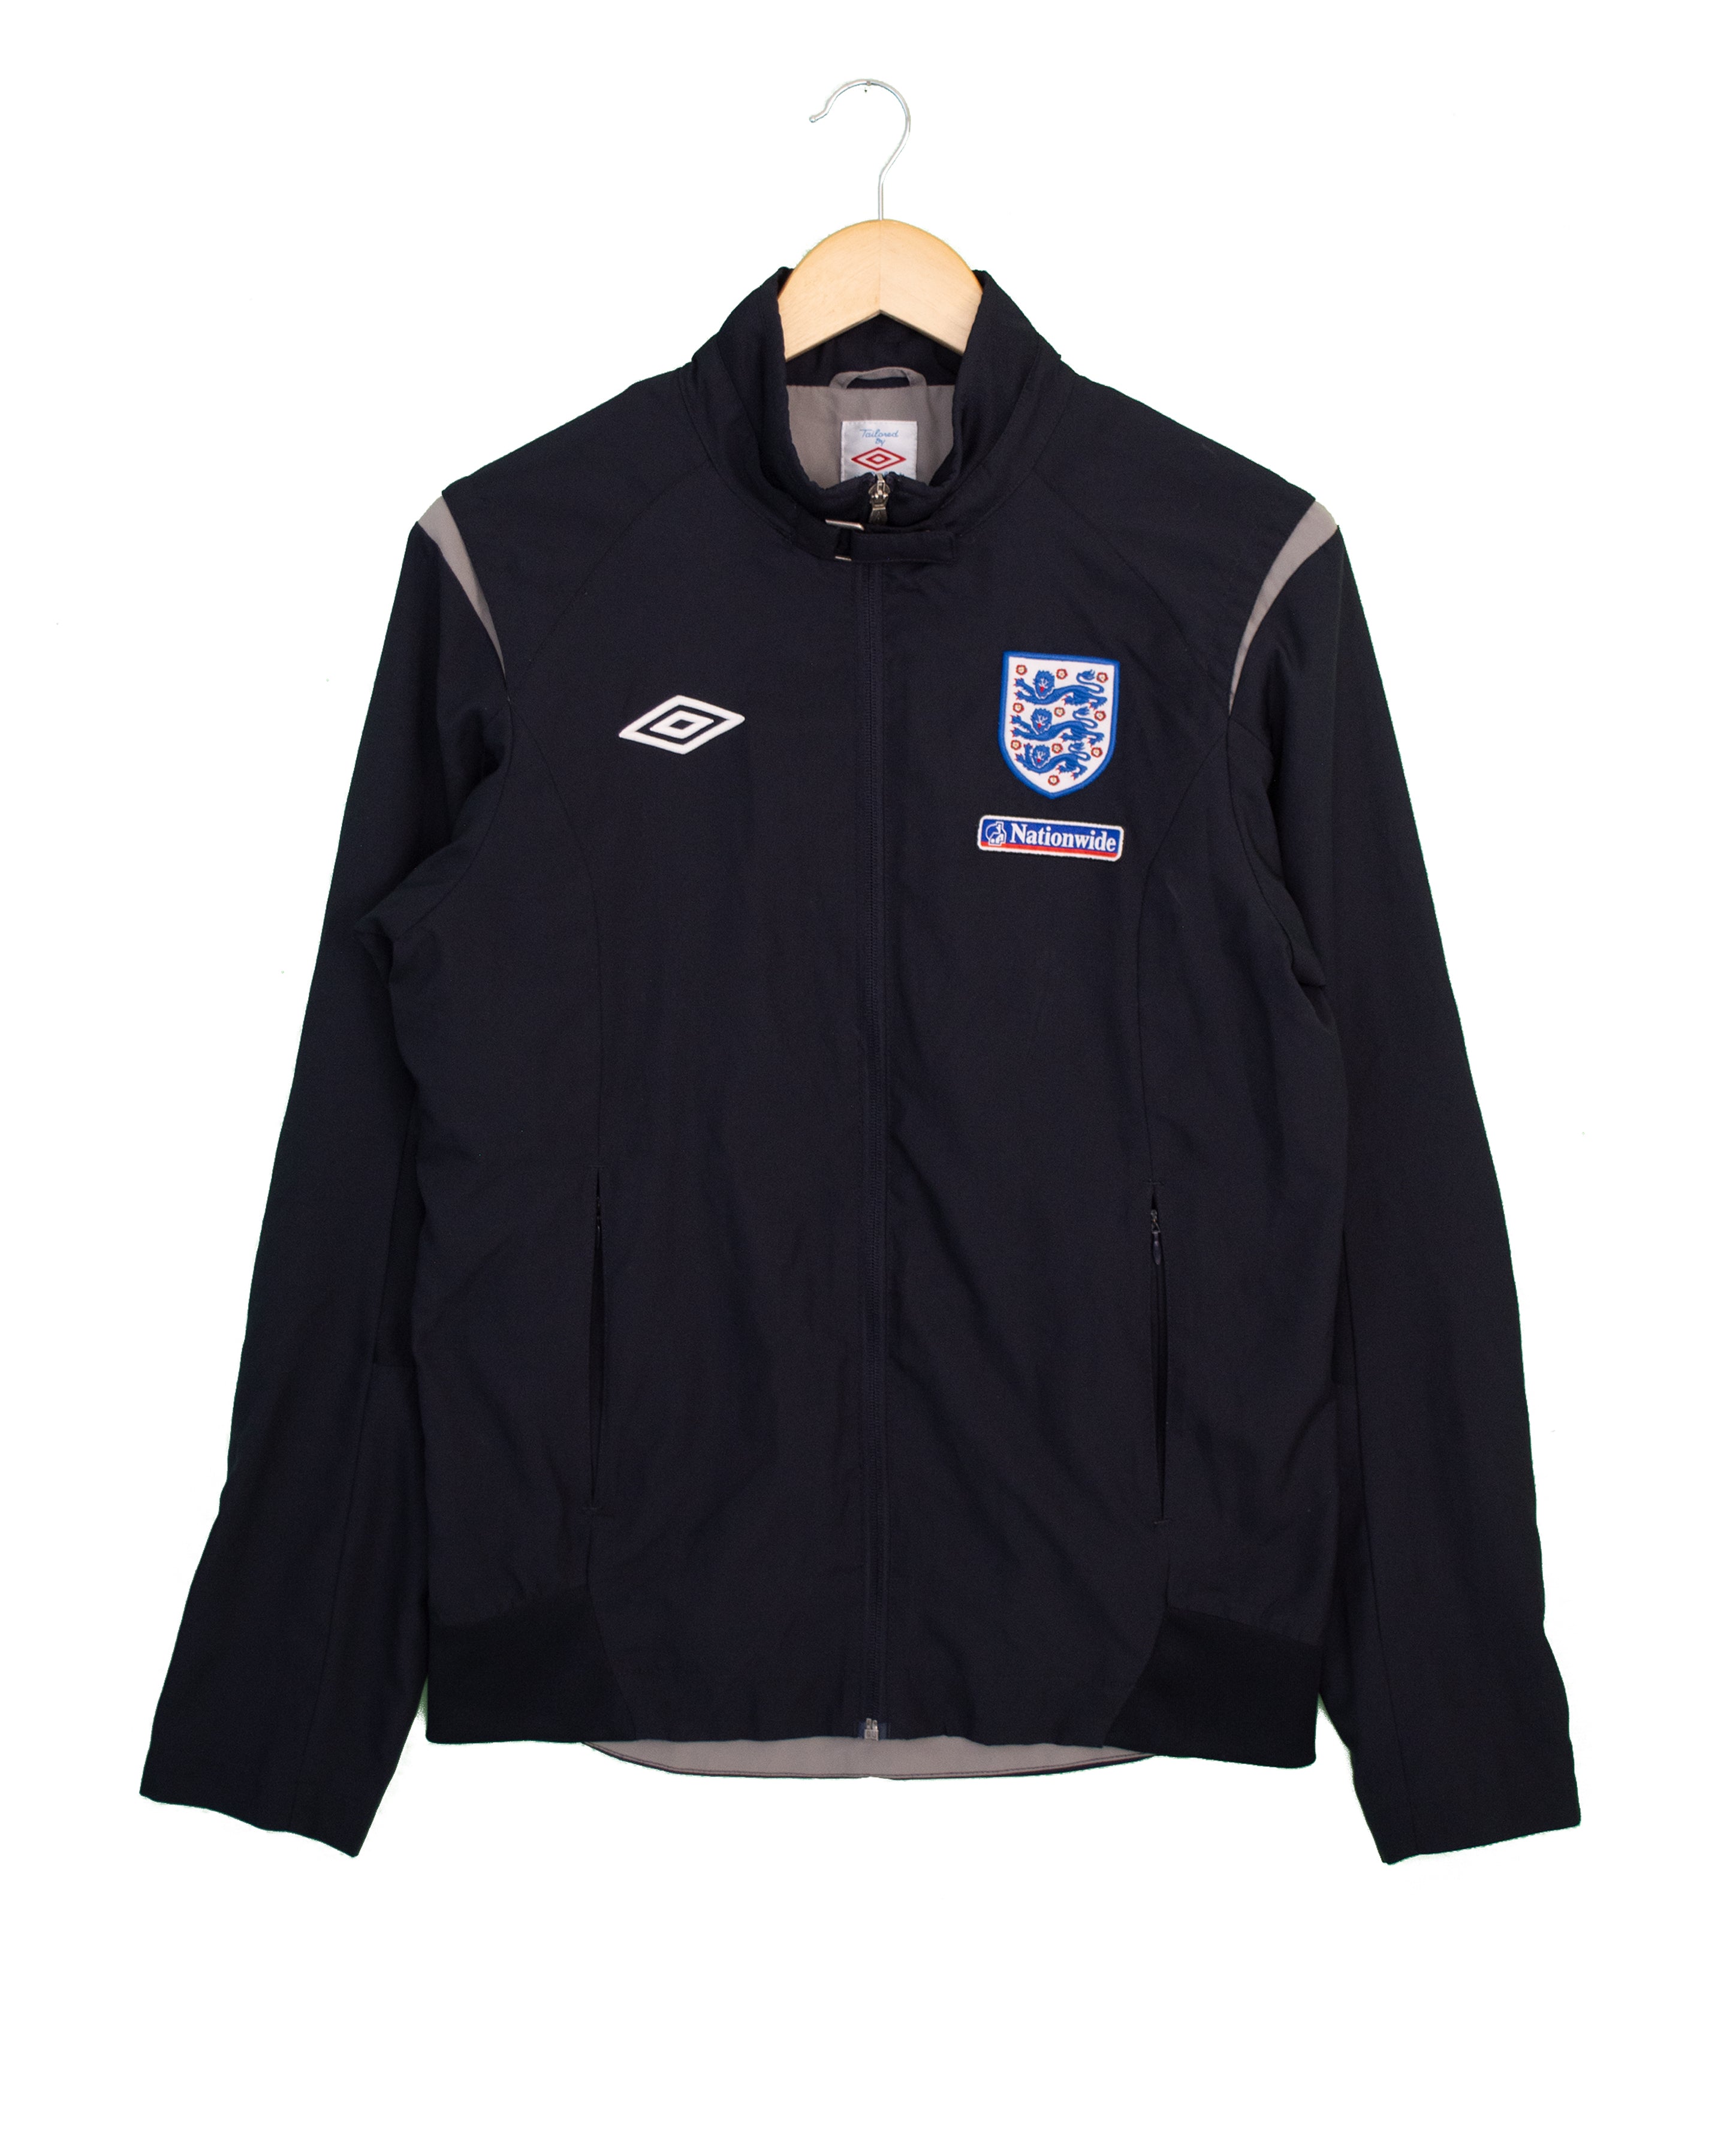 England Training Jacket - S - #1662